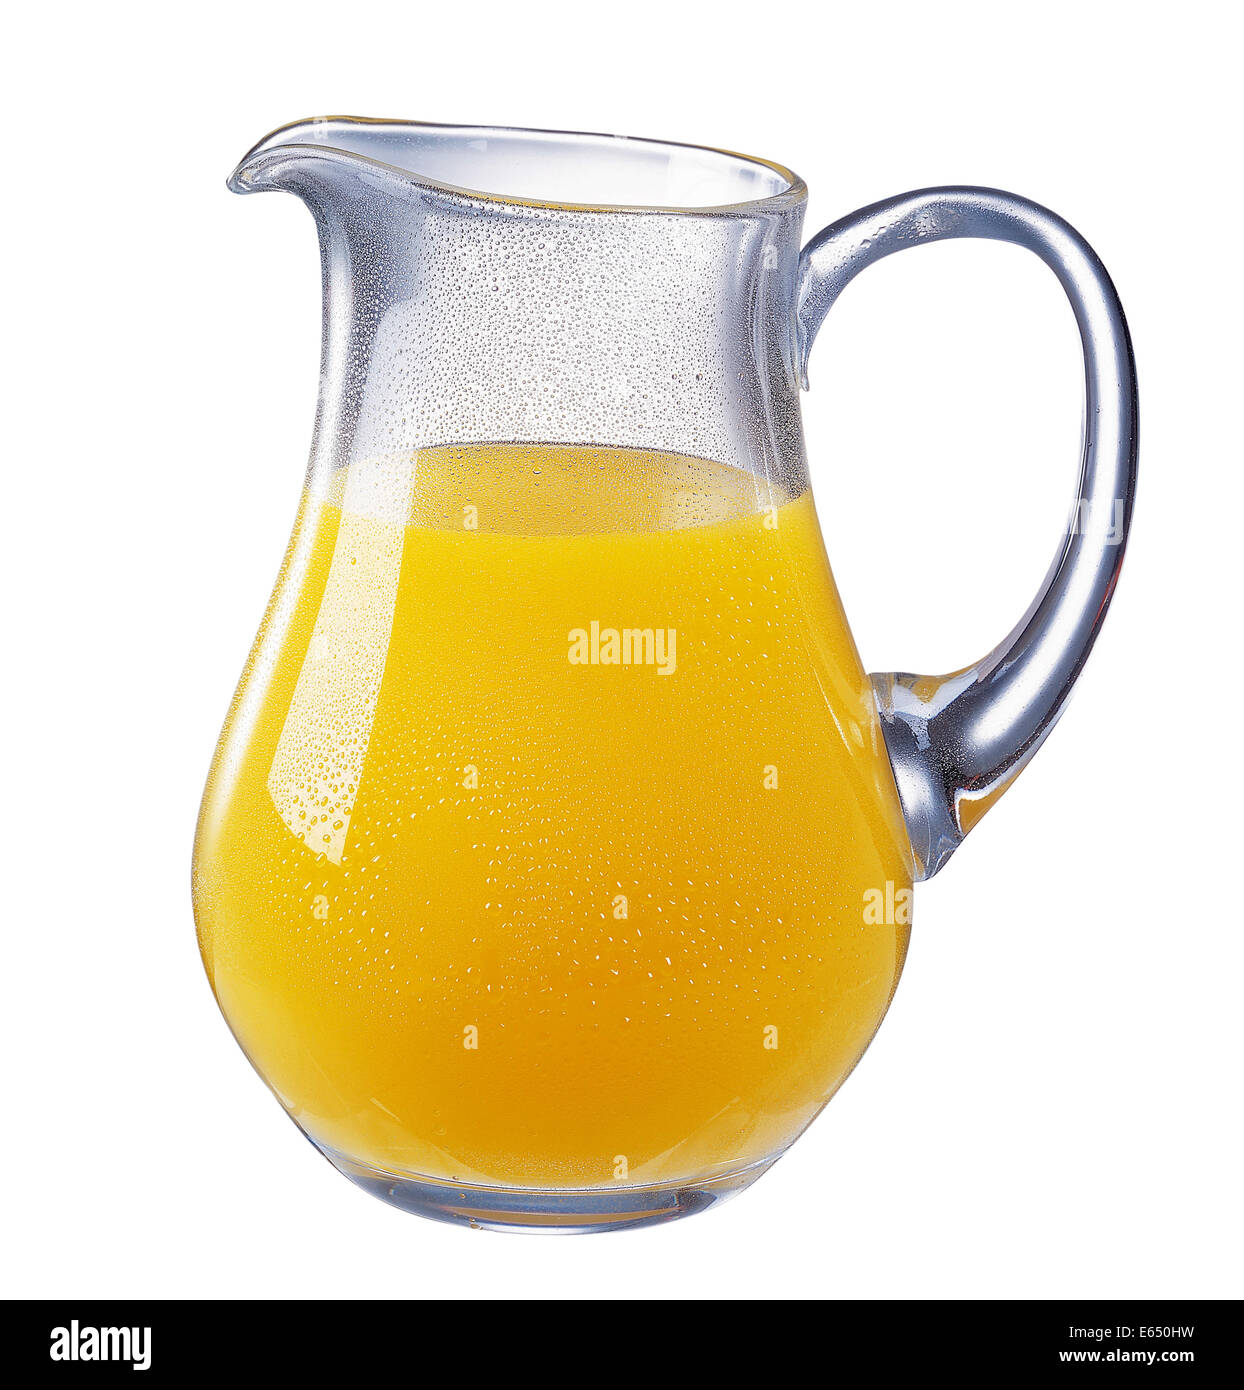 https://c8.alamy.com/comp/E650HW/glass-jug-with-orange-juice-E650HW.jpg